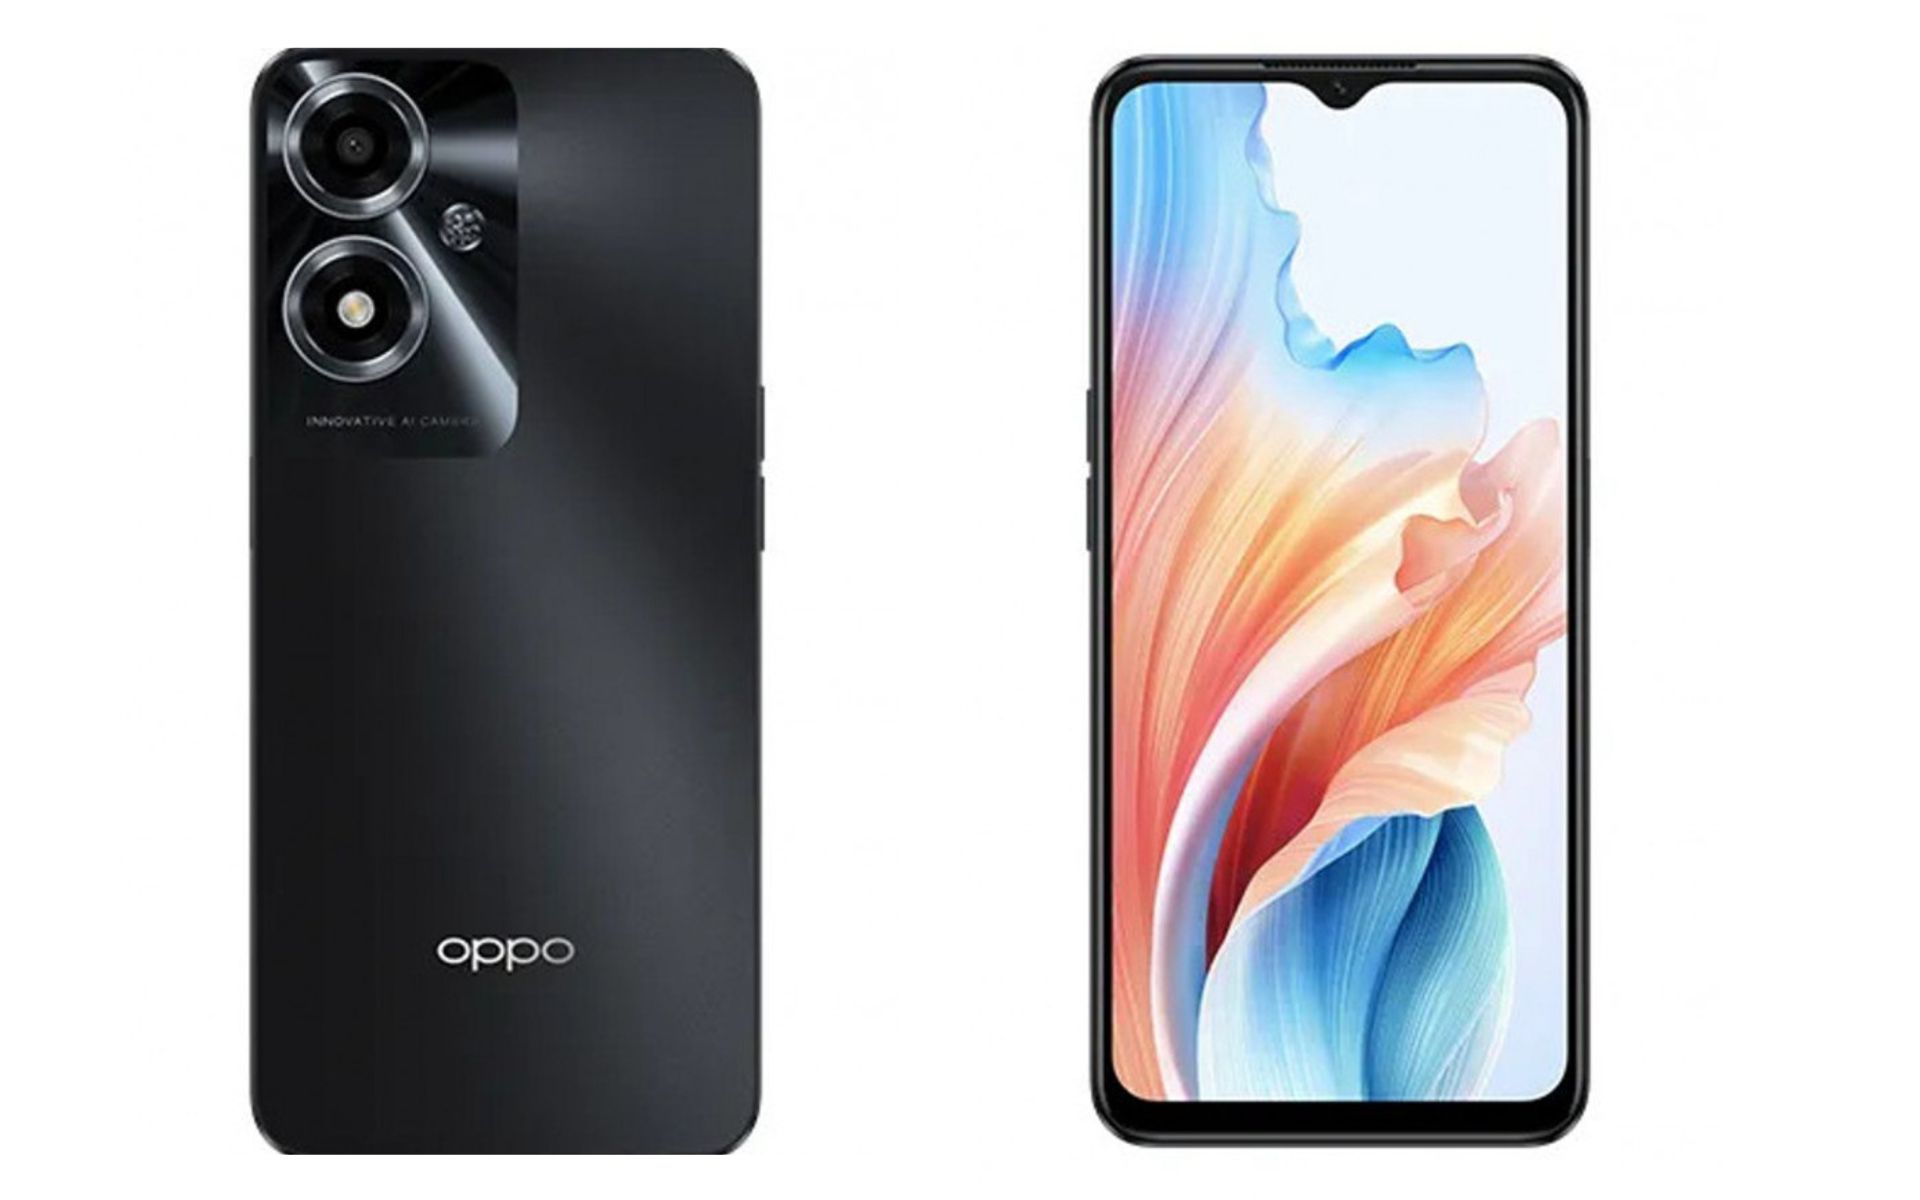 आ रहा है ओप्पो का नया बजट-फ्रेंडली 5जी स्मार्टफोन, लॉन्च से पहले फीचर्स और  डिजाइन रेंडर्स लीक, यहाँ जानें डीटेल - Oppo A2m Features And Design Renders  Leaks Ahead ...